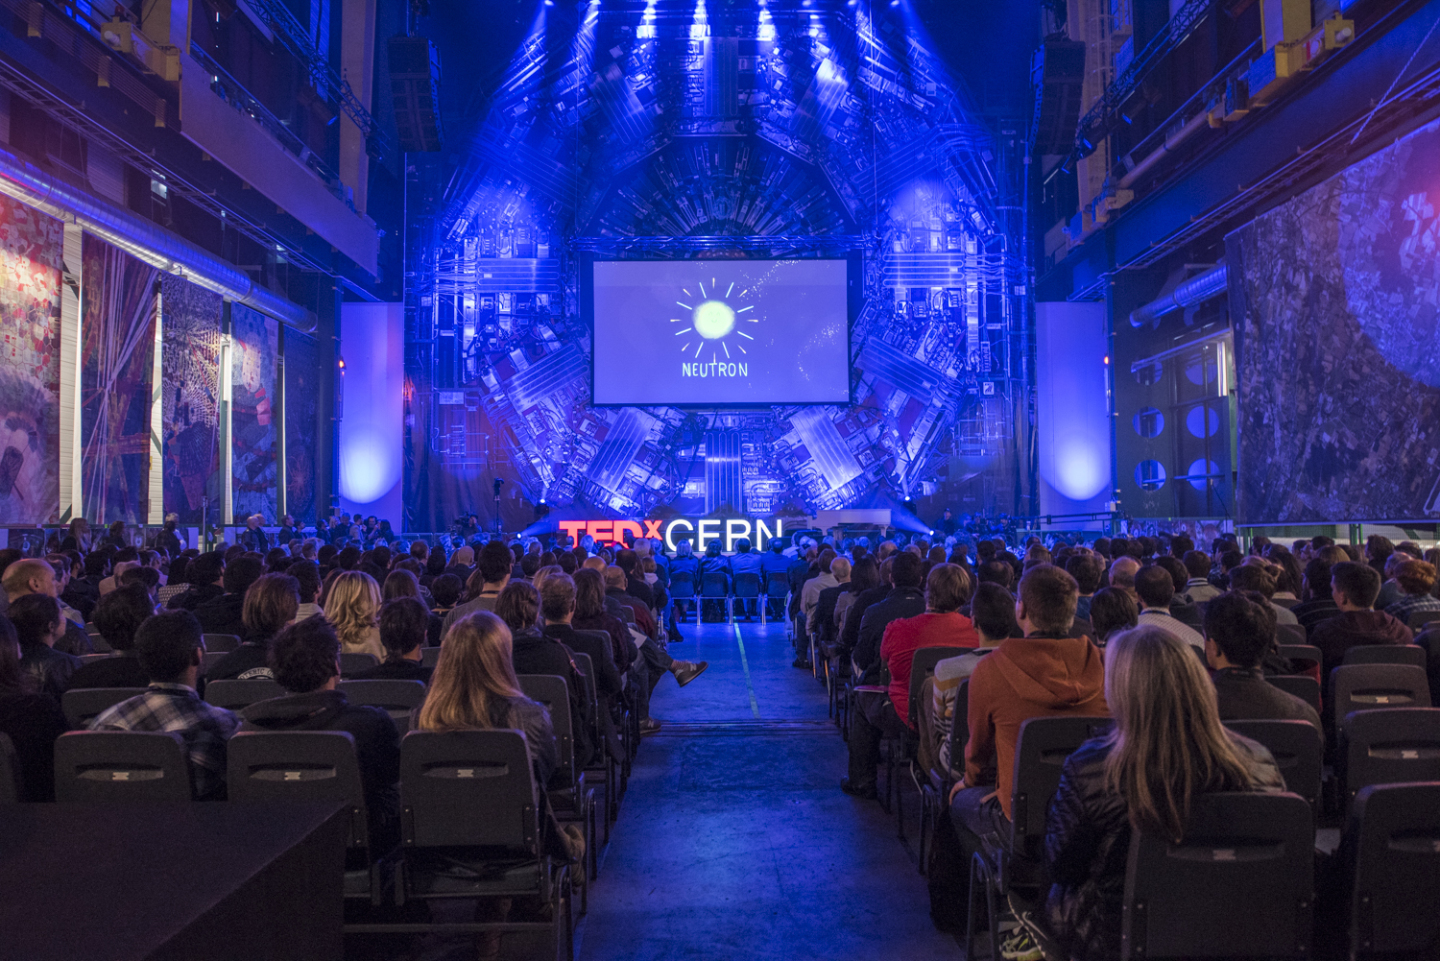 TEDxCERN capte l’attention de TED